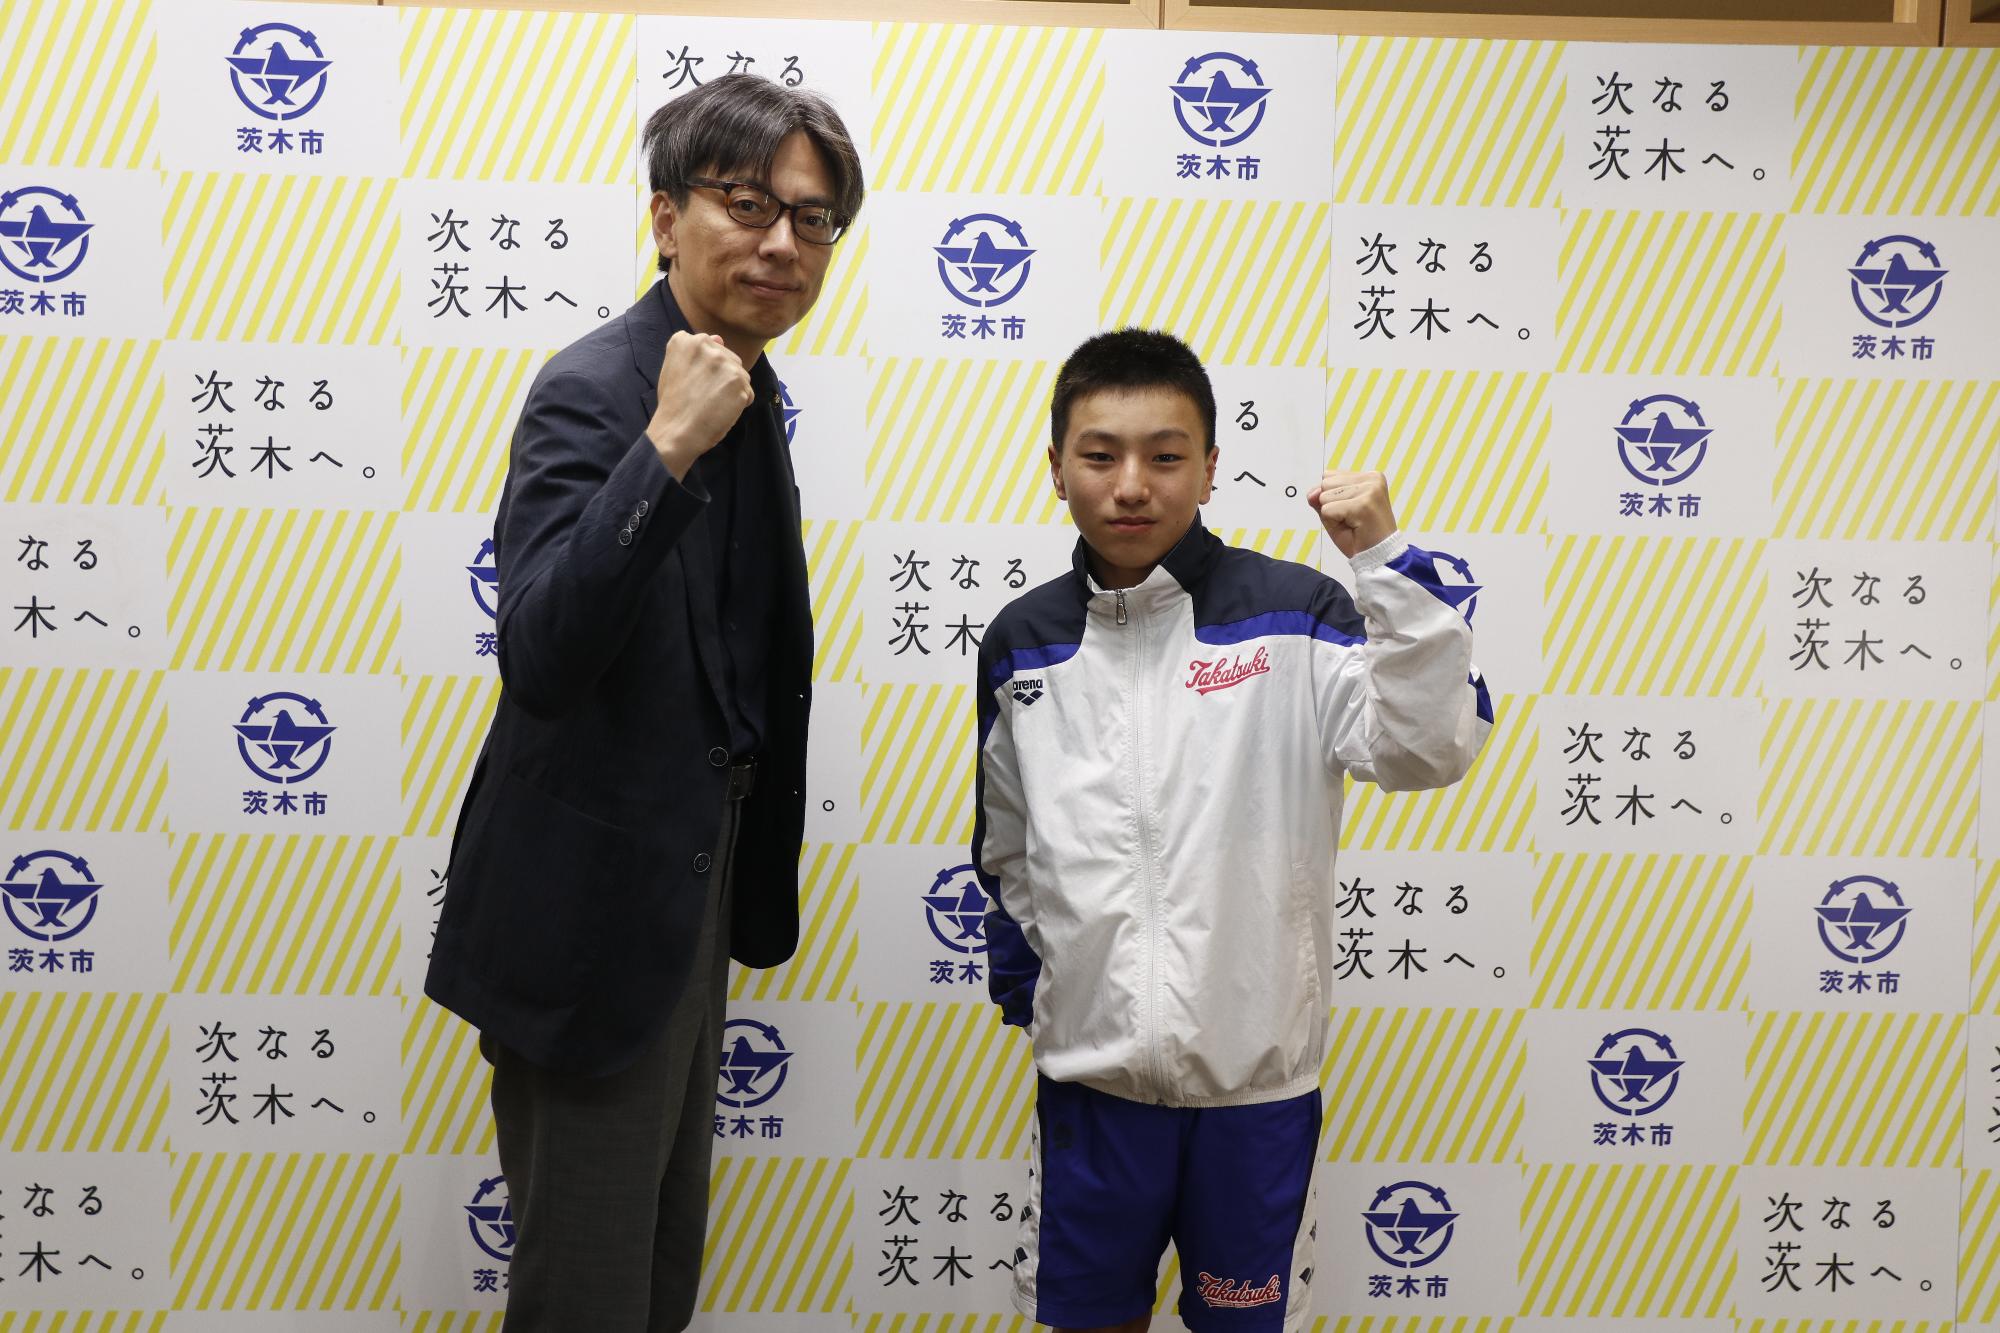 寺田朝飛さんと市長の写真